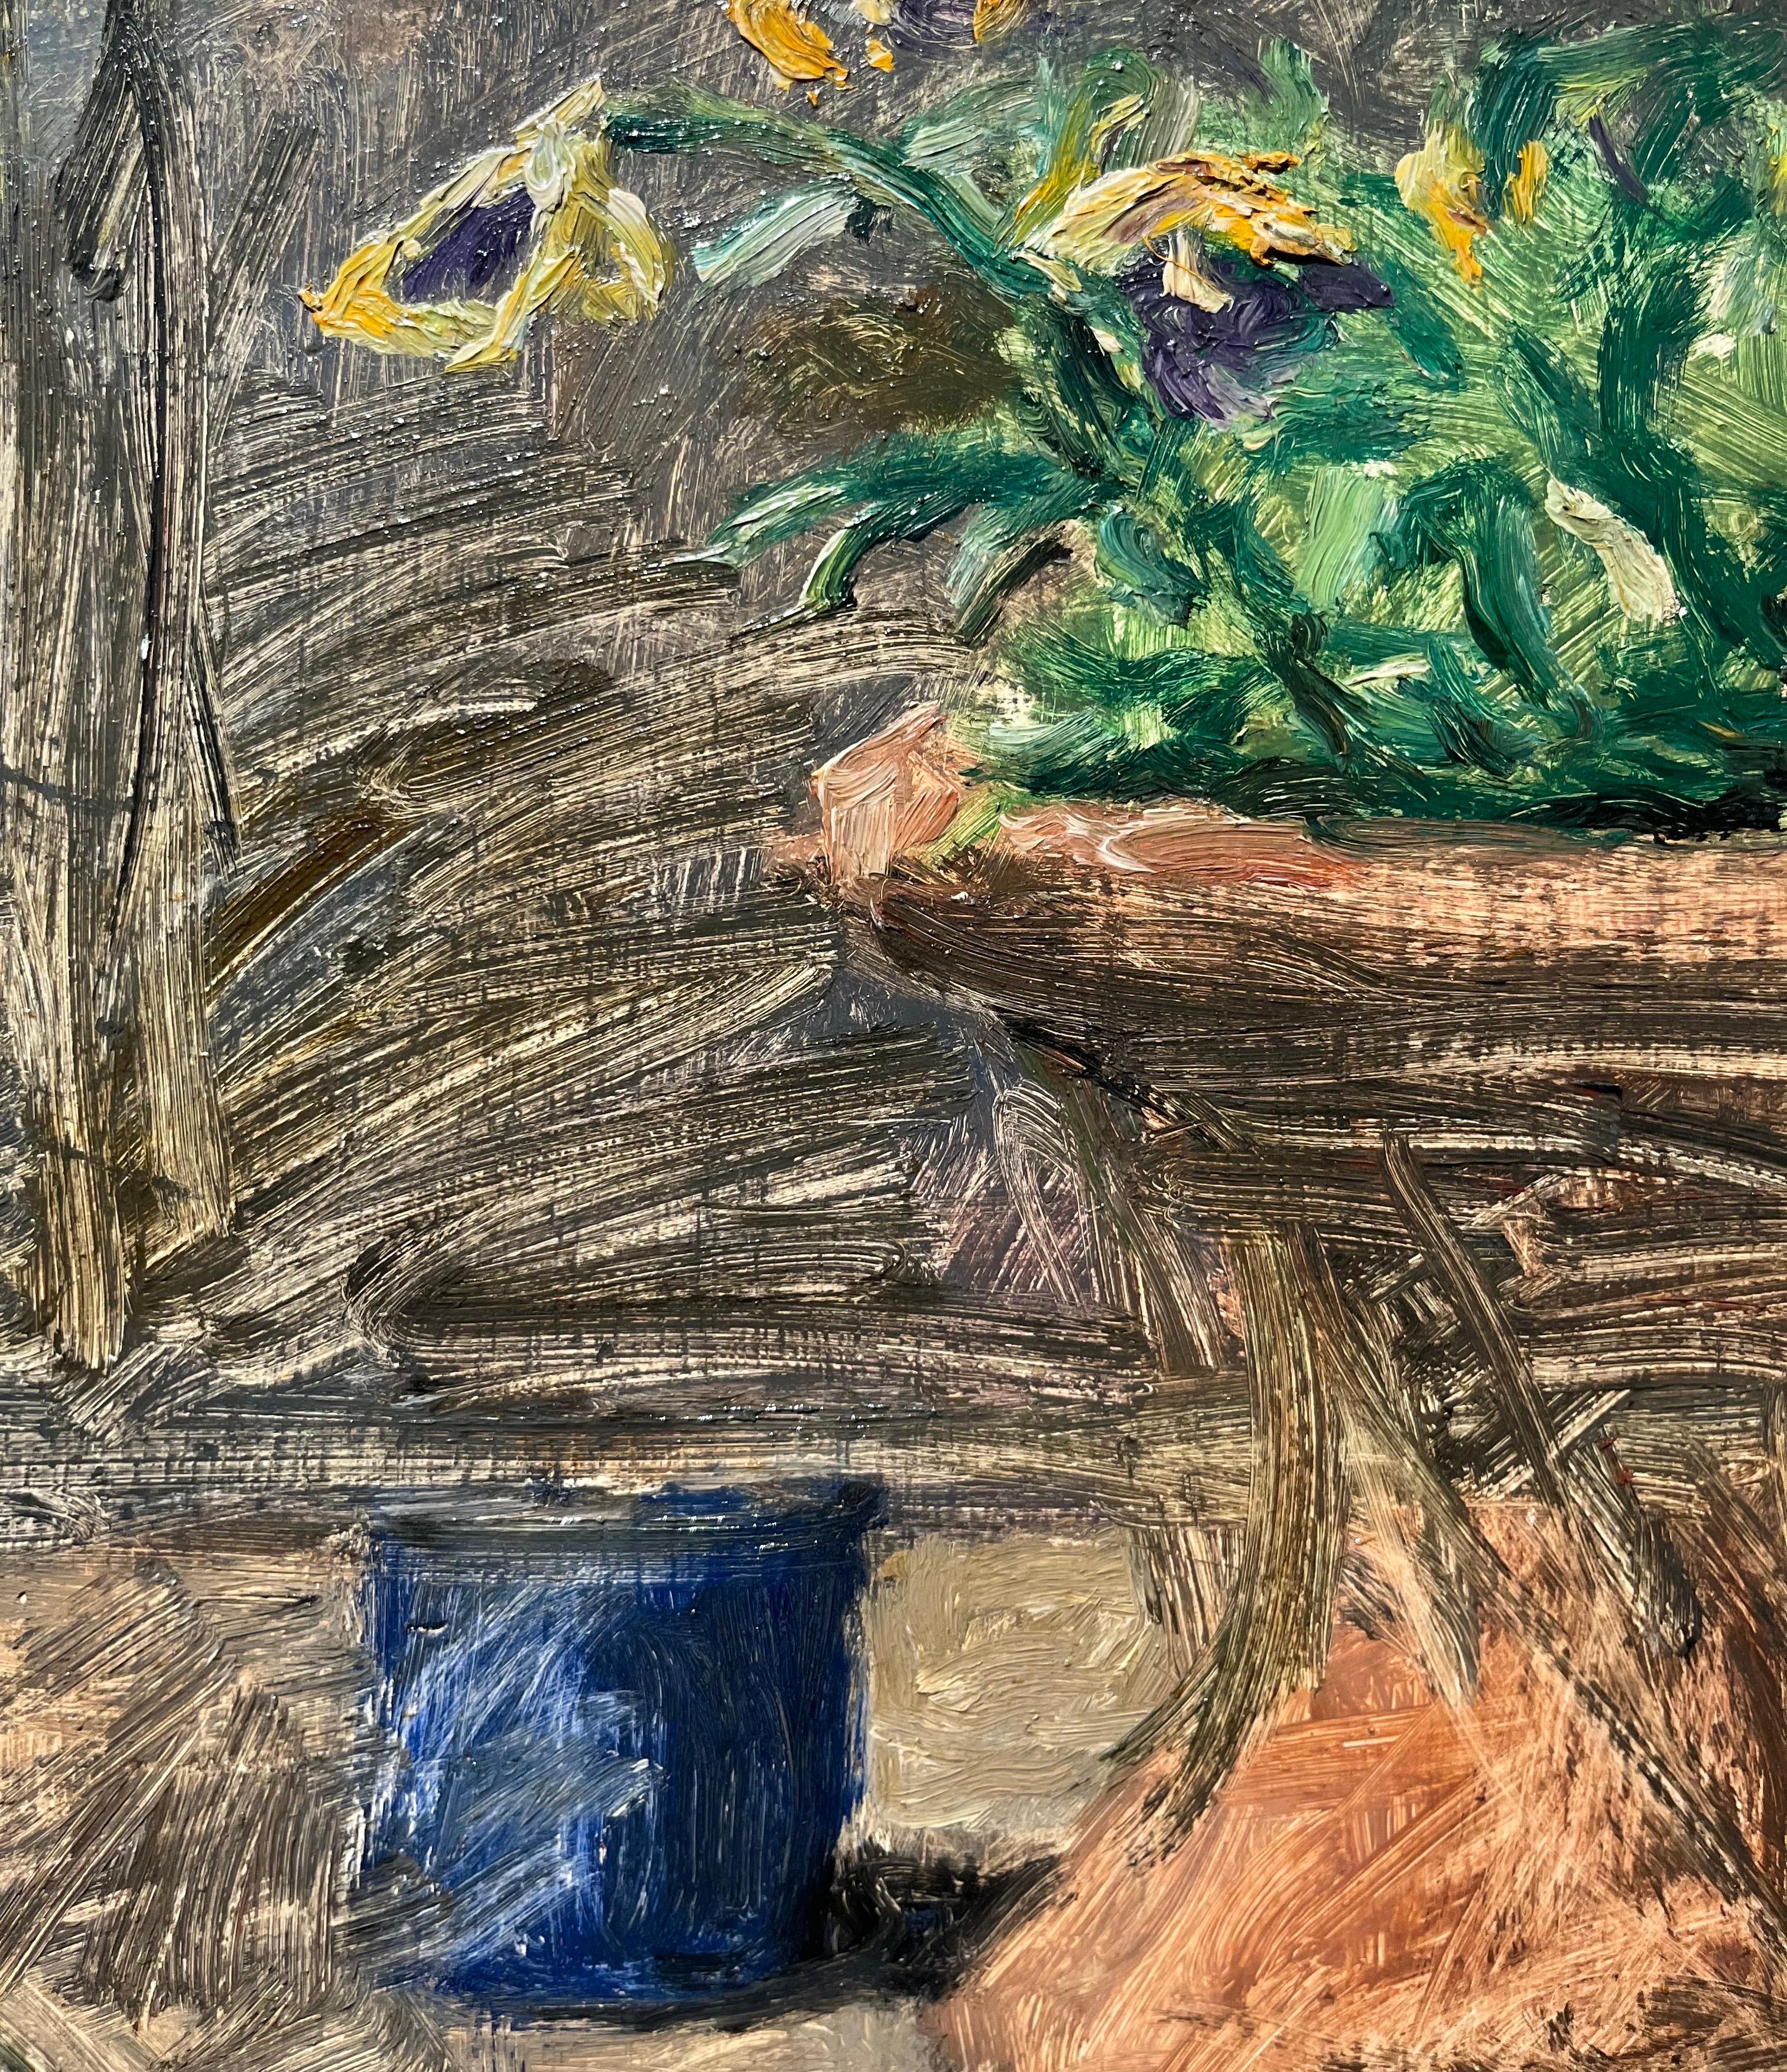 nature morte, coquillage
Enzo FARAONI (S. Stefano Magra, La Spezia, 1920/2017)

Enzo Faraoni est un grand peintre et graveur florentin ; il exprime le quotidien poétique des choses simples et concrètes à travers une gamme chromatique délicate. Parmi